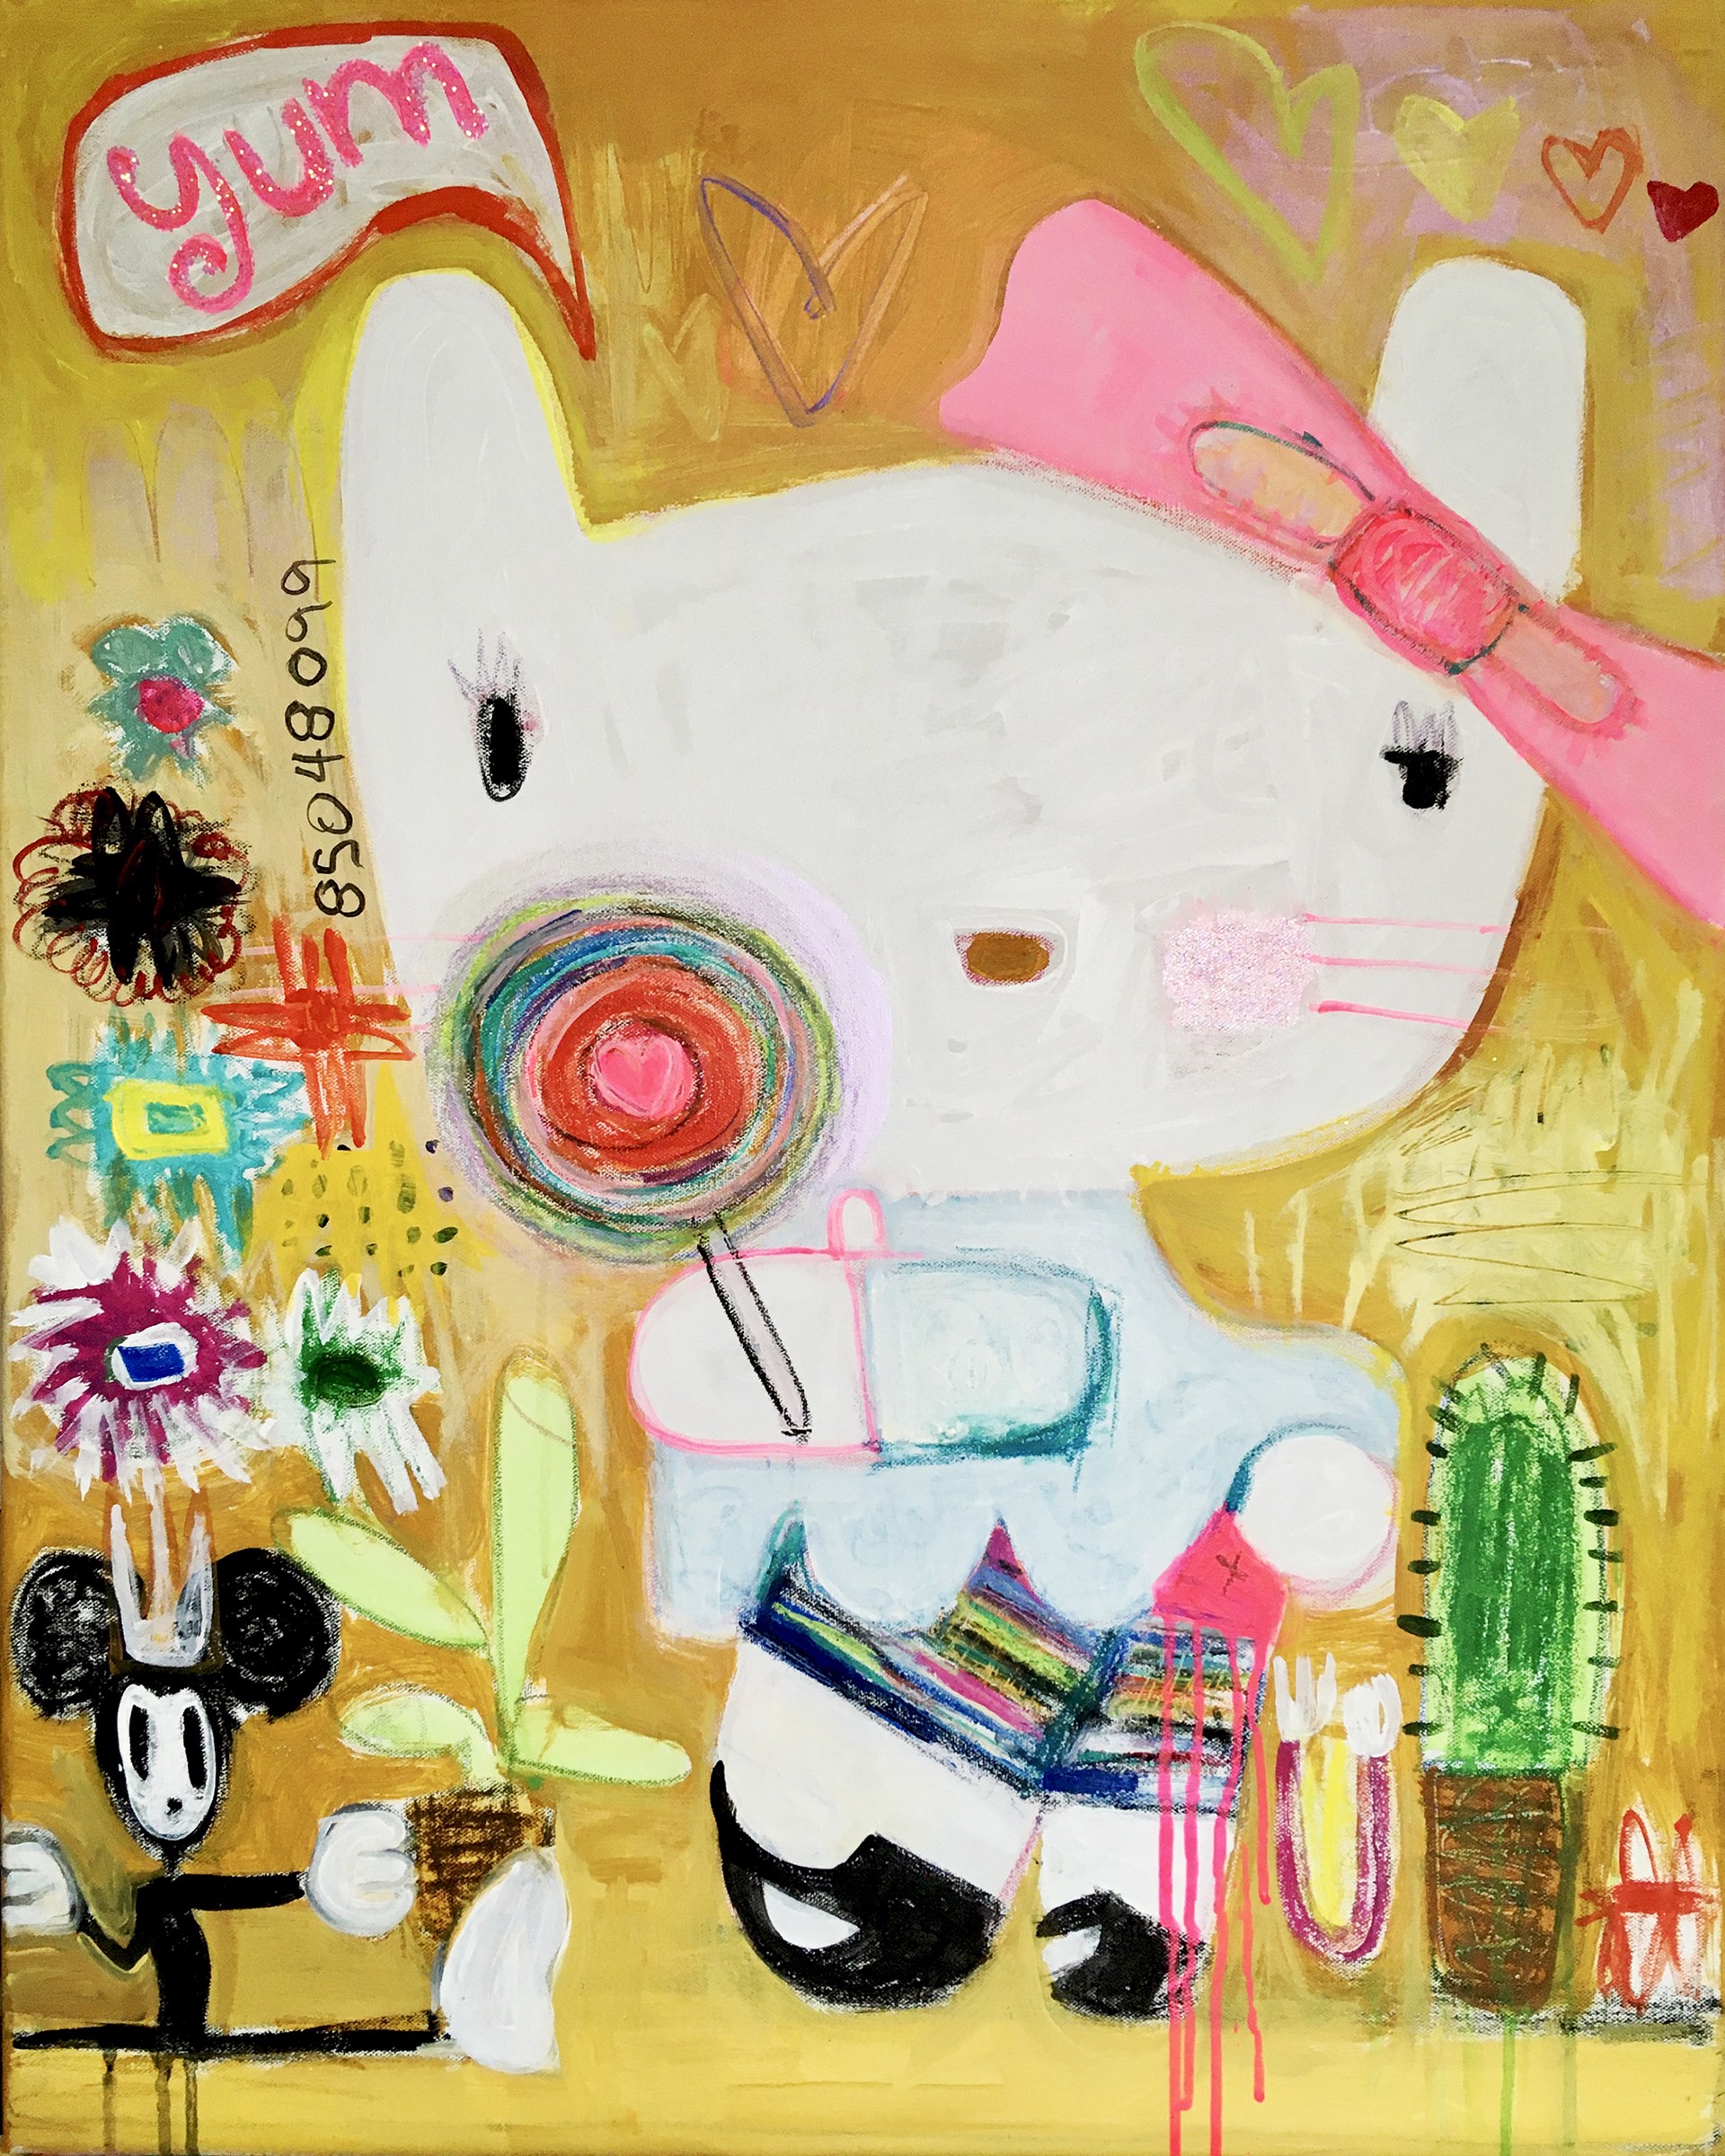 SWEET KITTY by FANNY NICOLE BRODAR